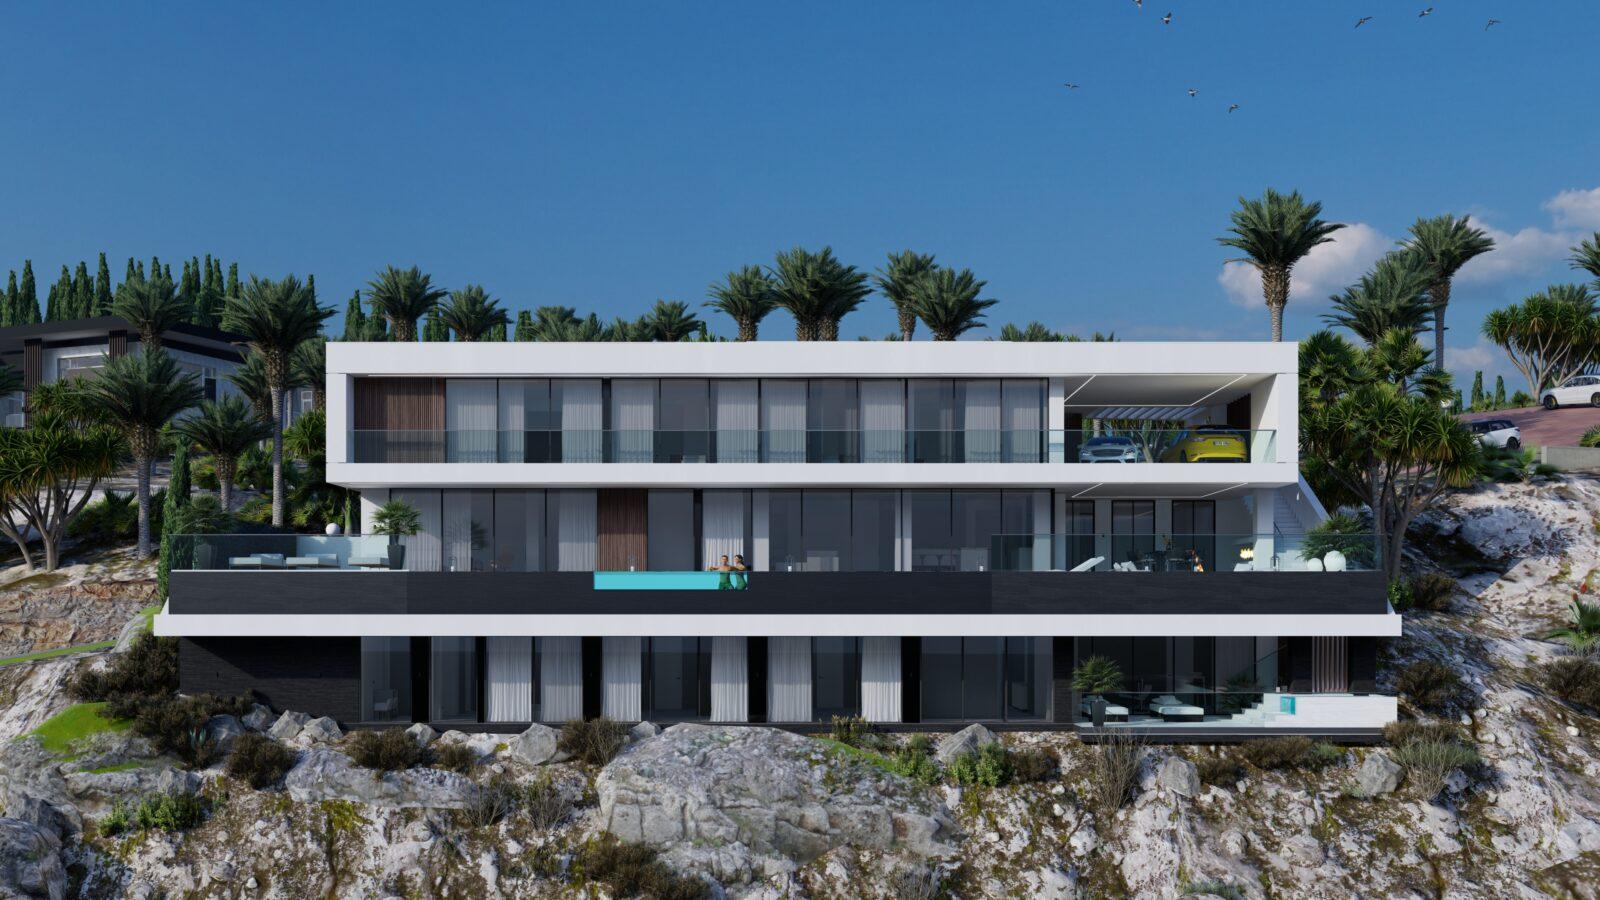 788m² Private Villa for Sale in Creta, Greece